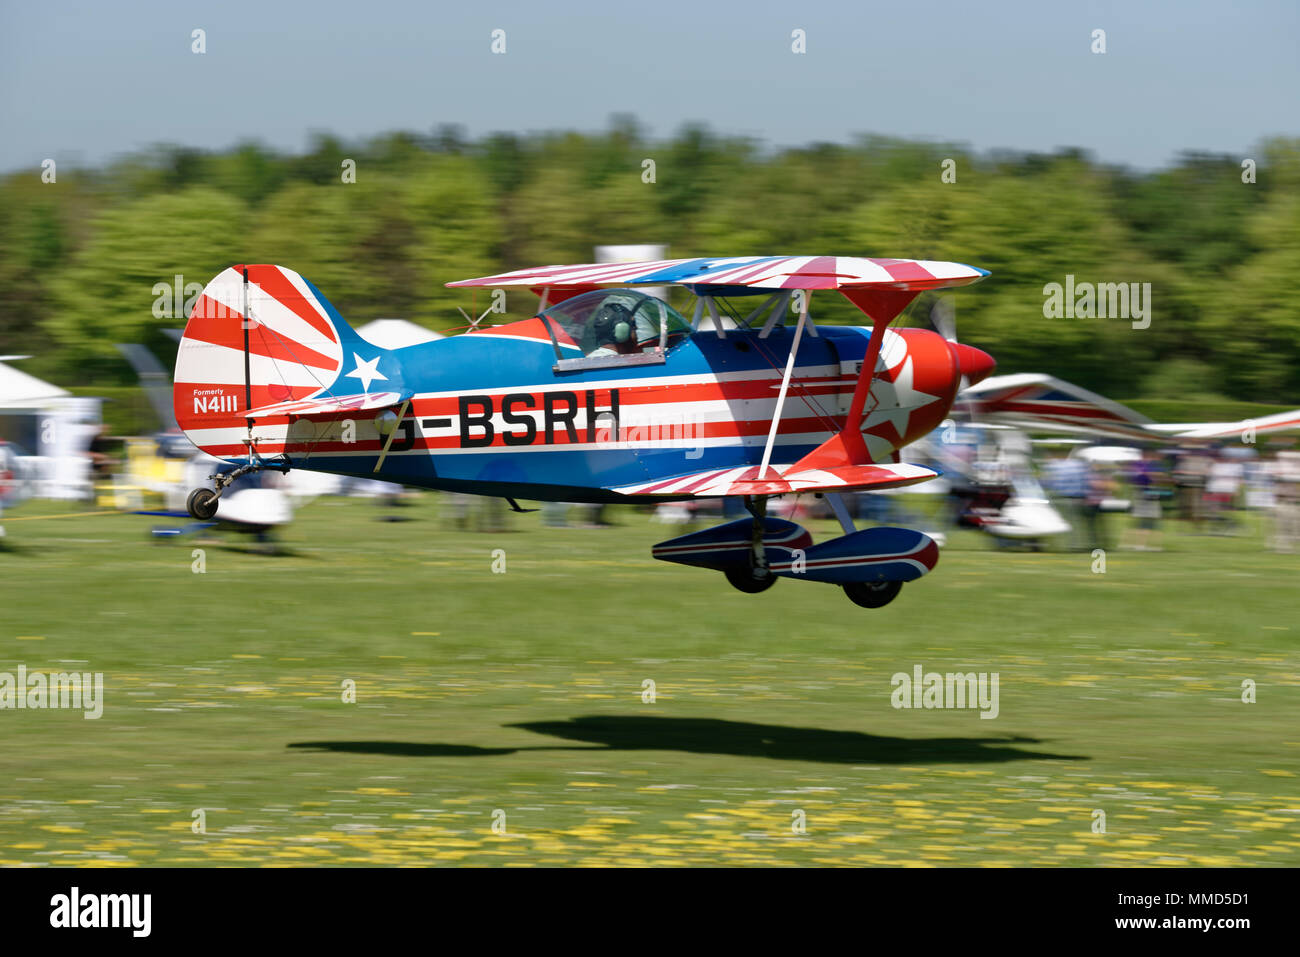 Sportlich suche Pitts Special aerobatic Doppeldecker G-BSRH fährt Popham Flugplatz in der Nähe von Winchester in Großbritannien. Stockfoto